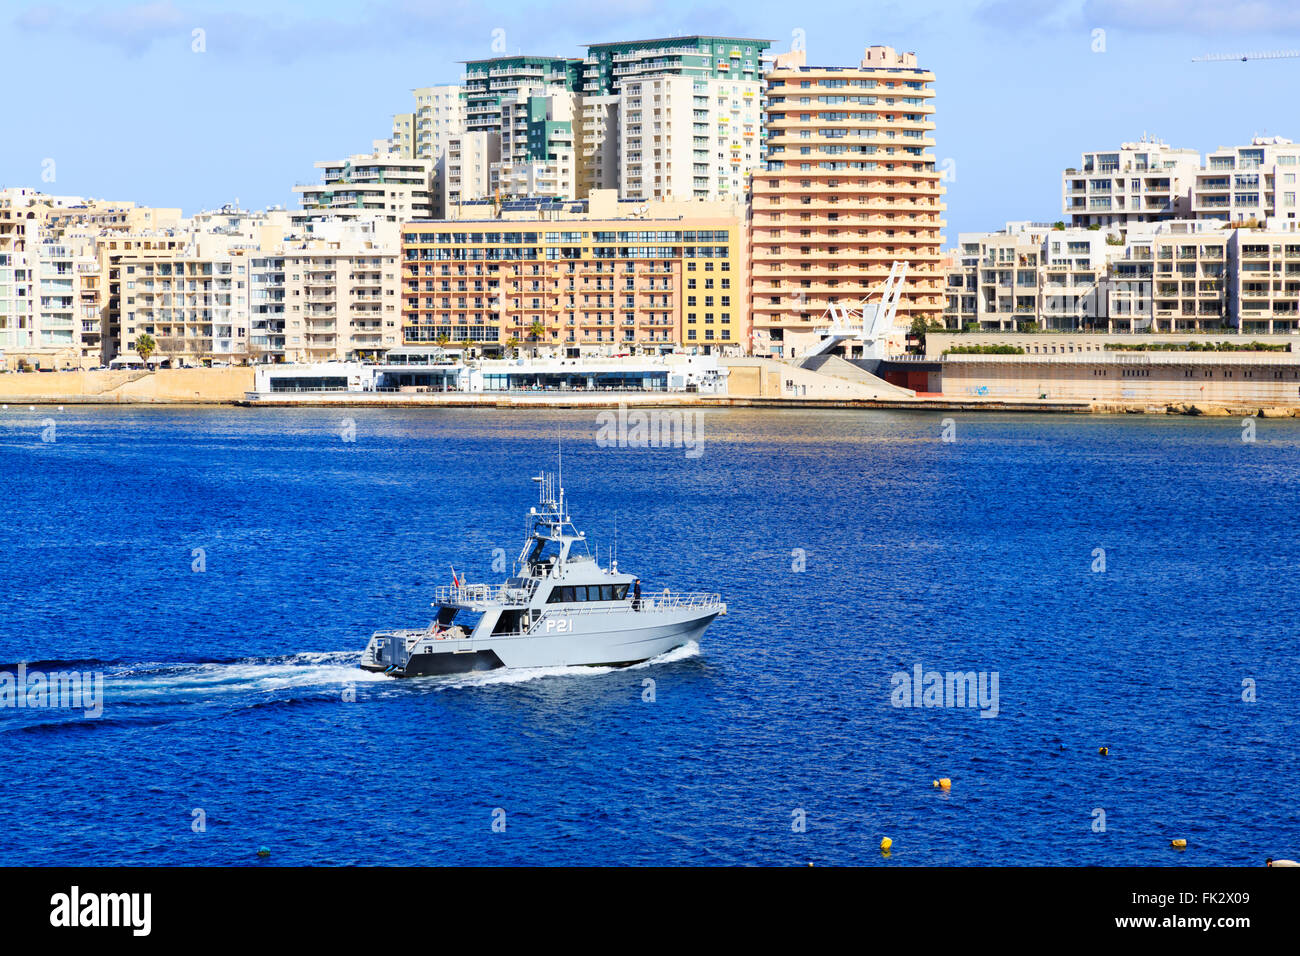 Marina militare maltese motovedetta lasciando il Grand Harbour a Sliema alberghi in background.de La Valletta, Malta Foto Stock